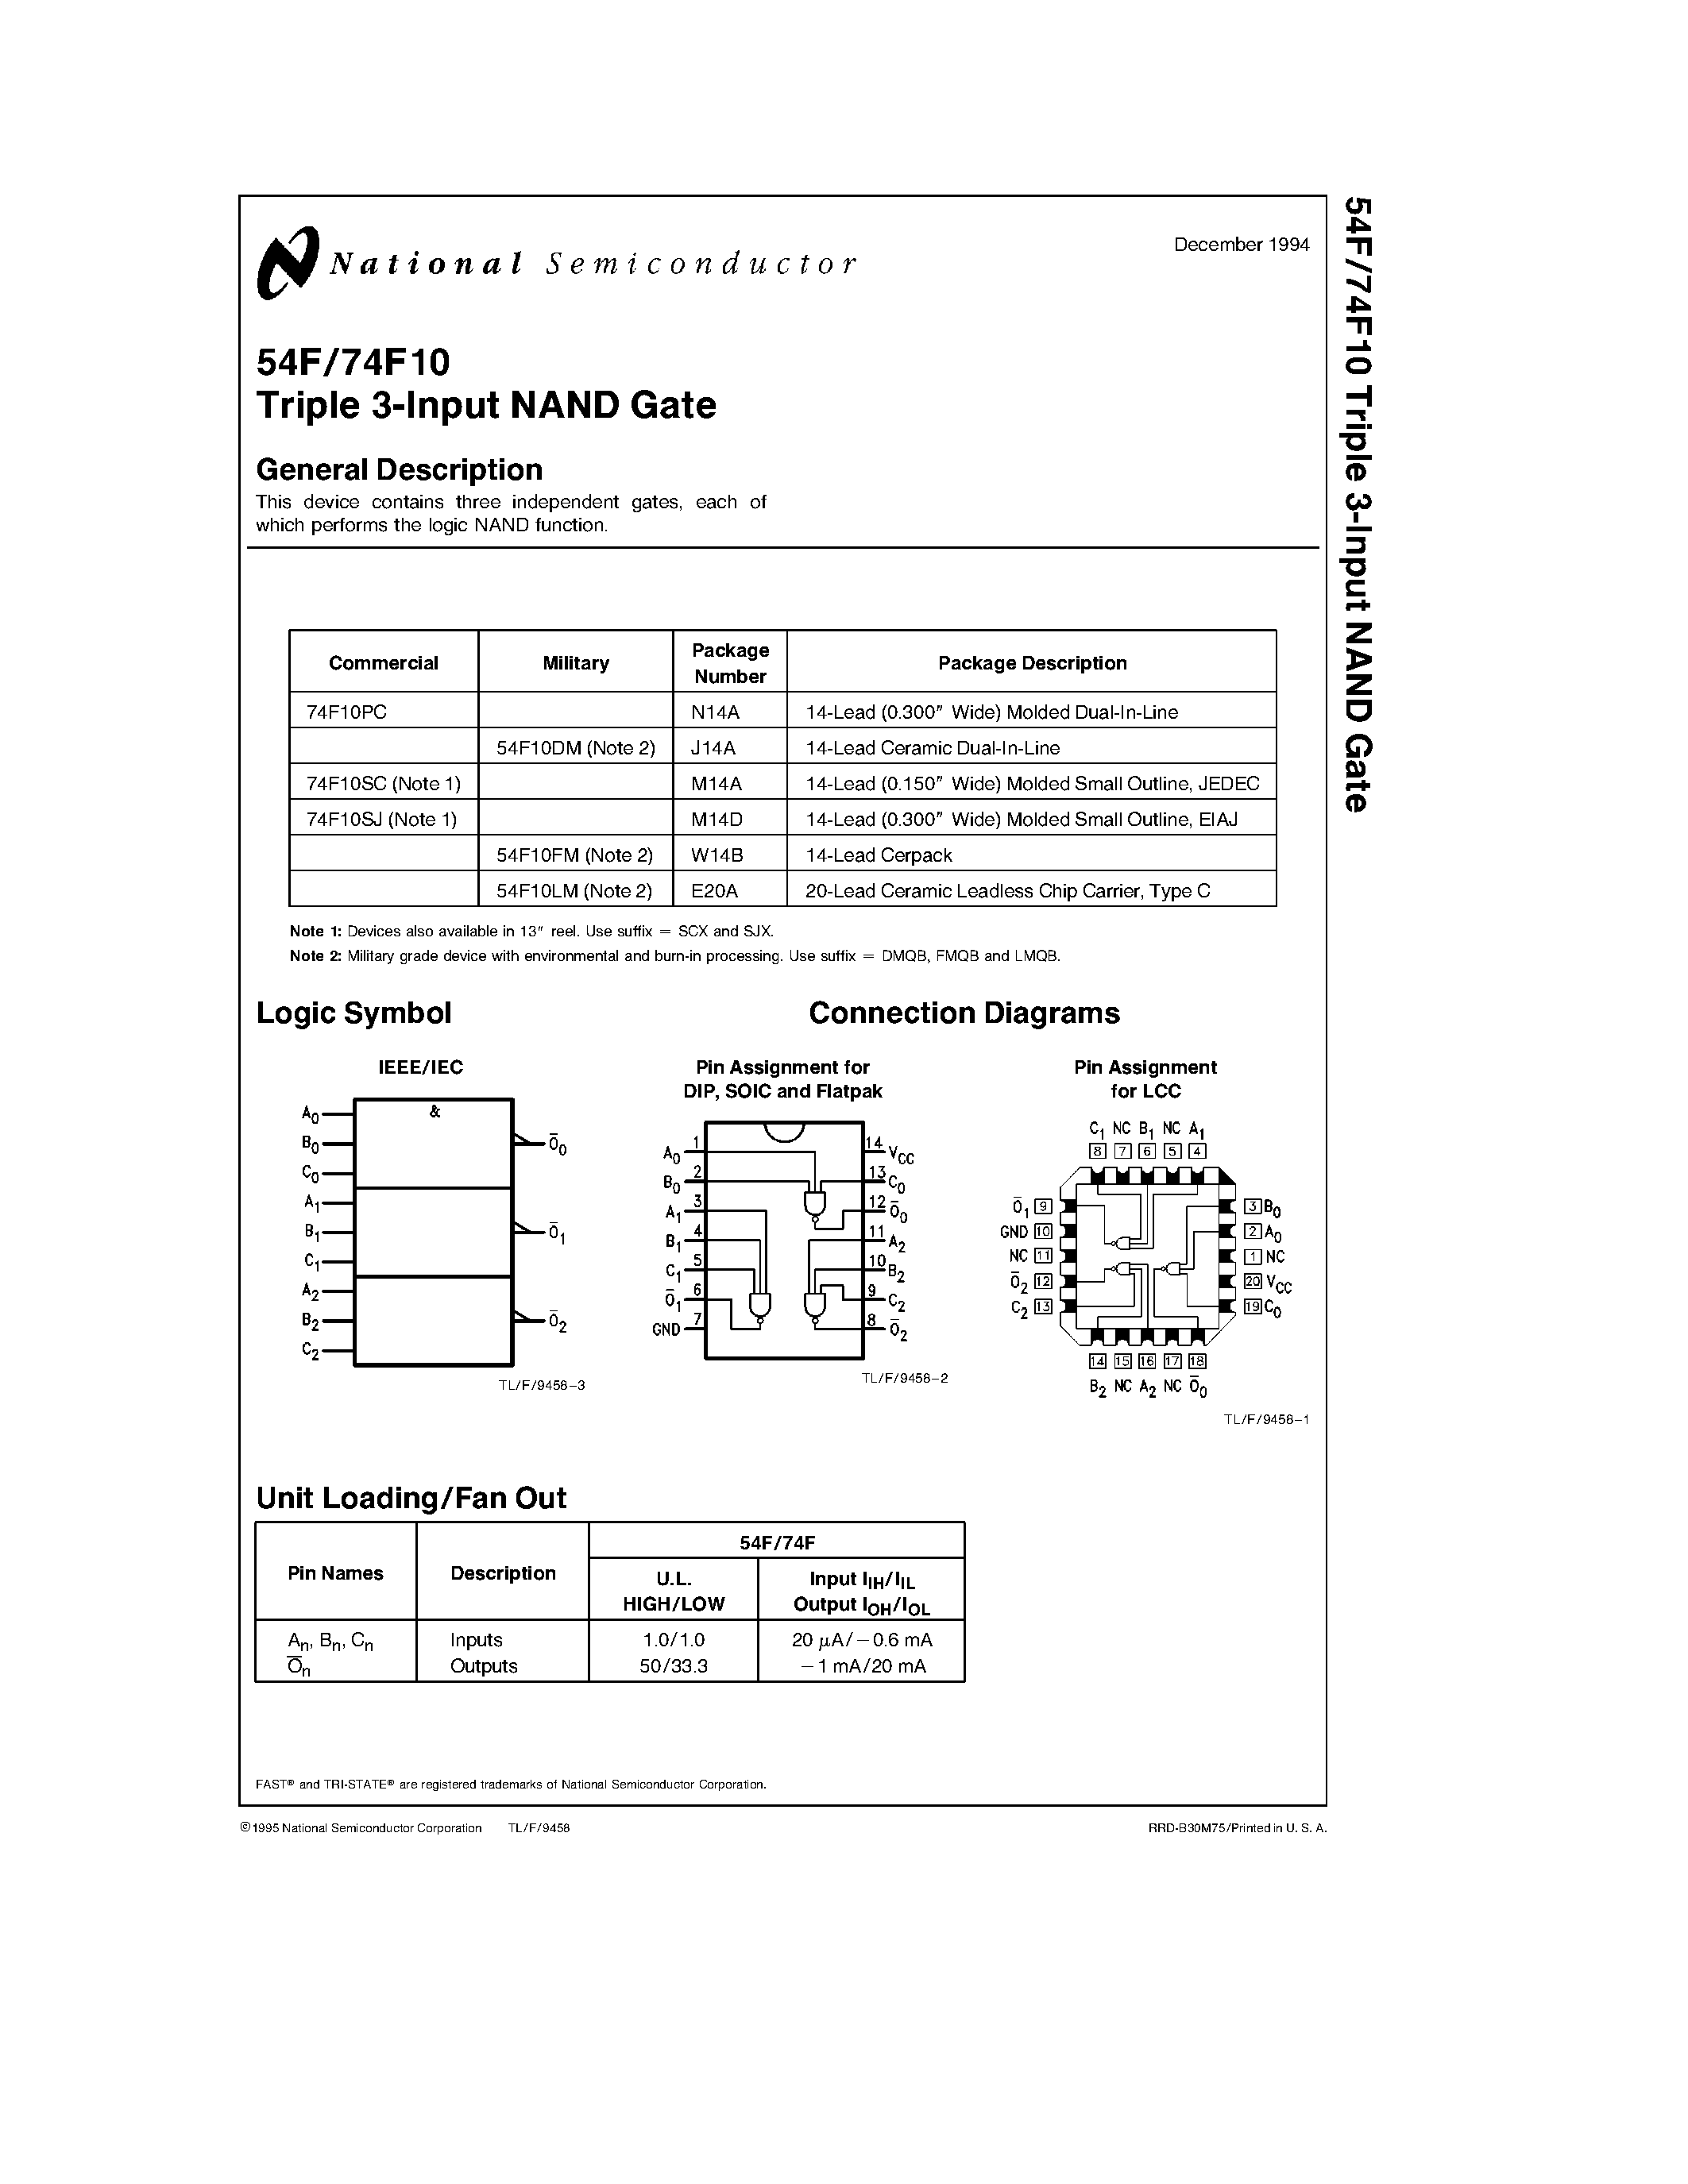 Datasheet 74F10PC - Triple 3-Input NAND Gate page 1